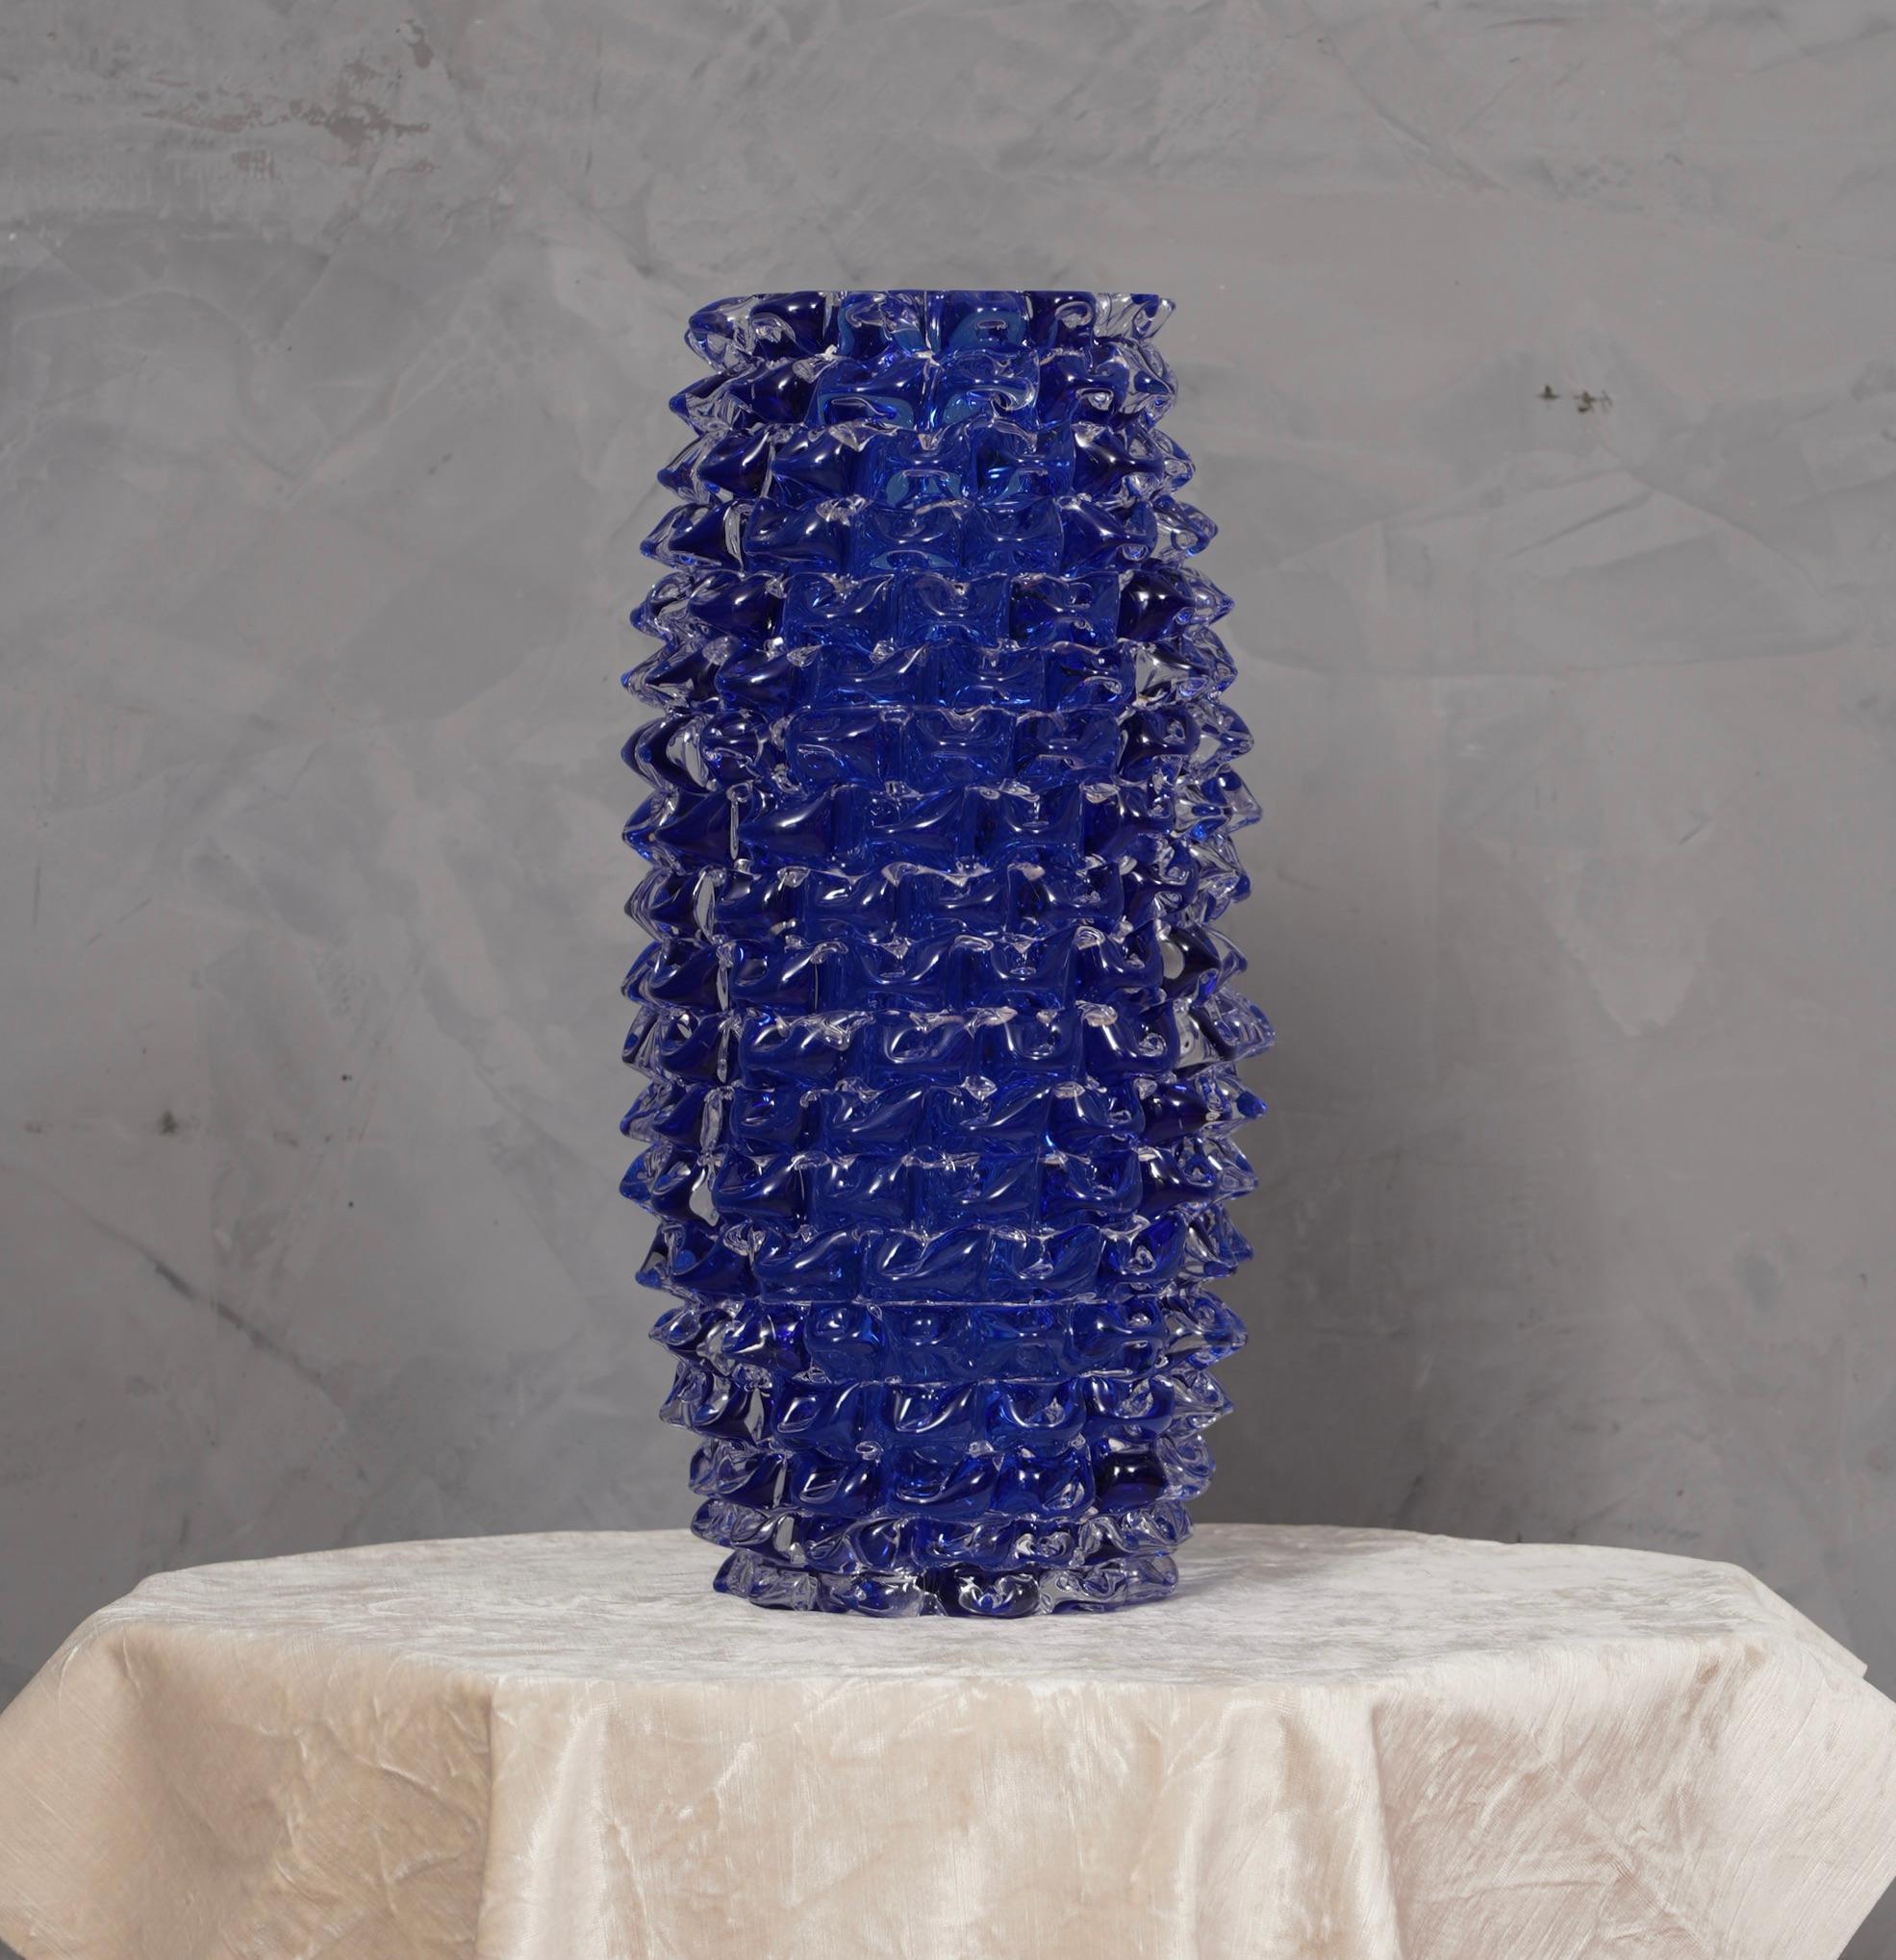 Fantastische Vase aus der Murano Glashütte, sowohl für seine besondere Verarbeitung und für seine Farbe, in der Tat ist die Vase blaue Farbe, sondern hat eine interne transparente Beschichtung, genannt 